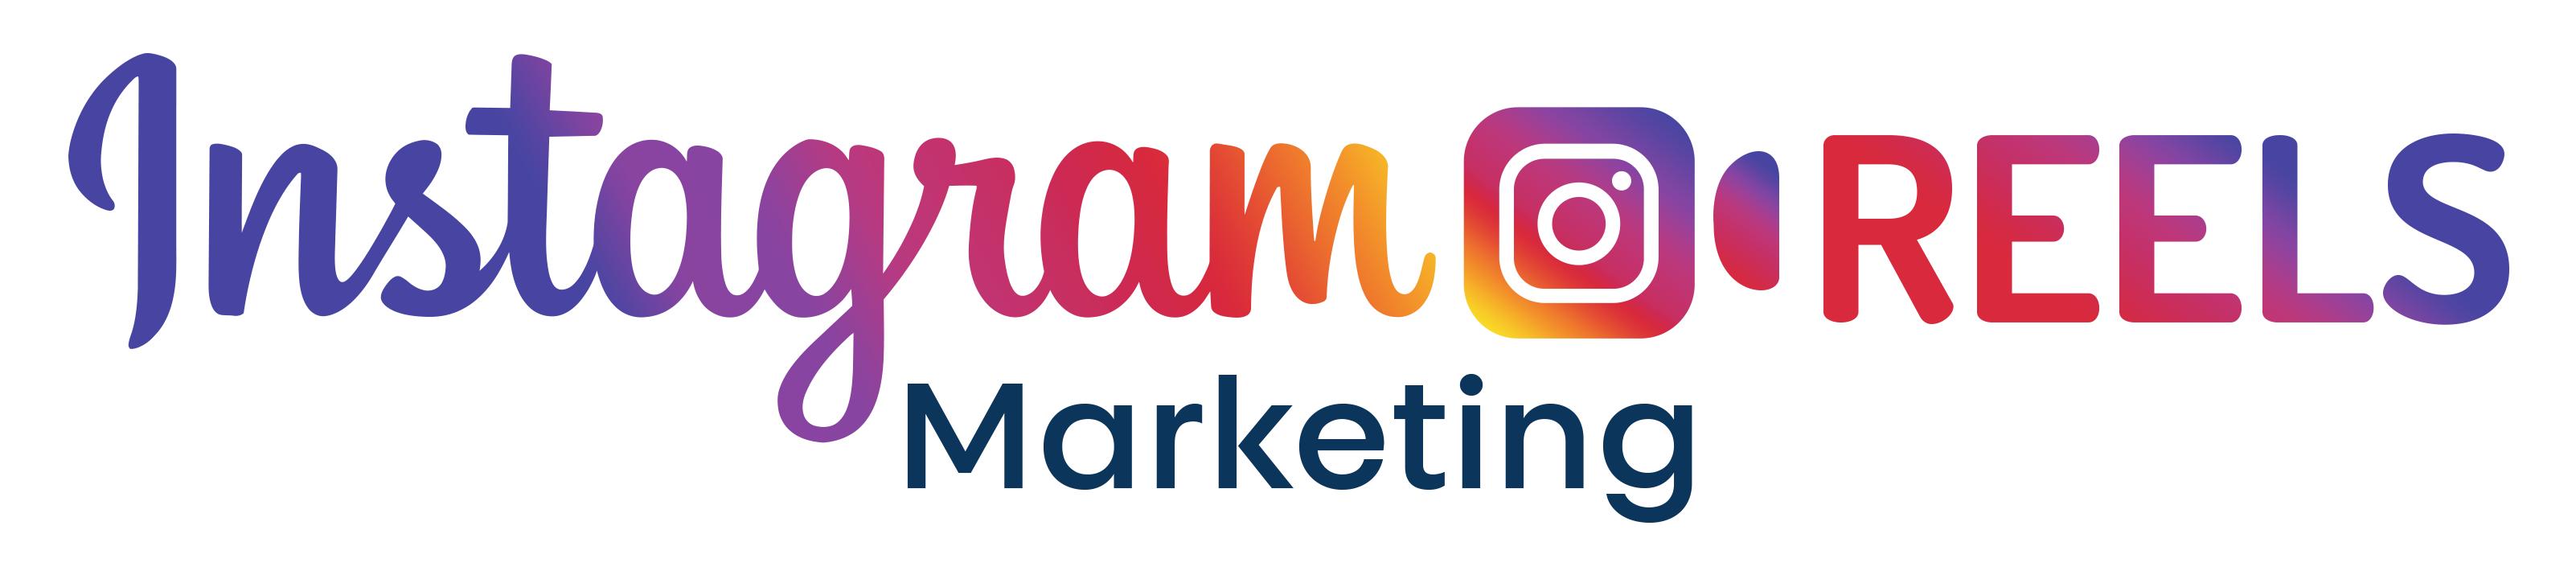 Instagram Reels Marketing - Upsell